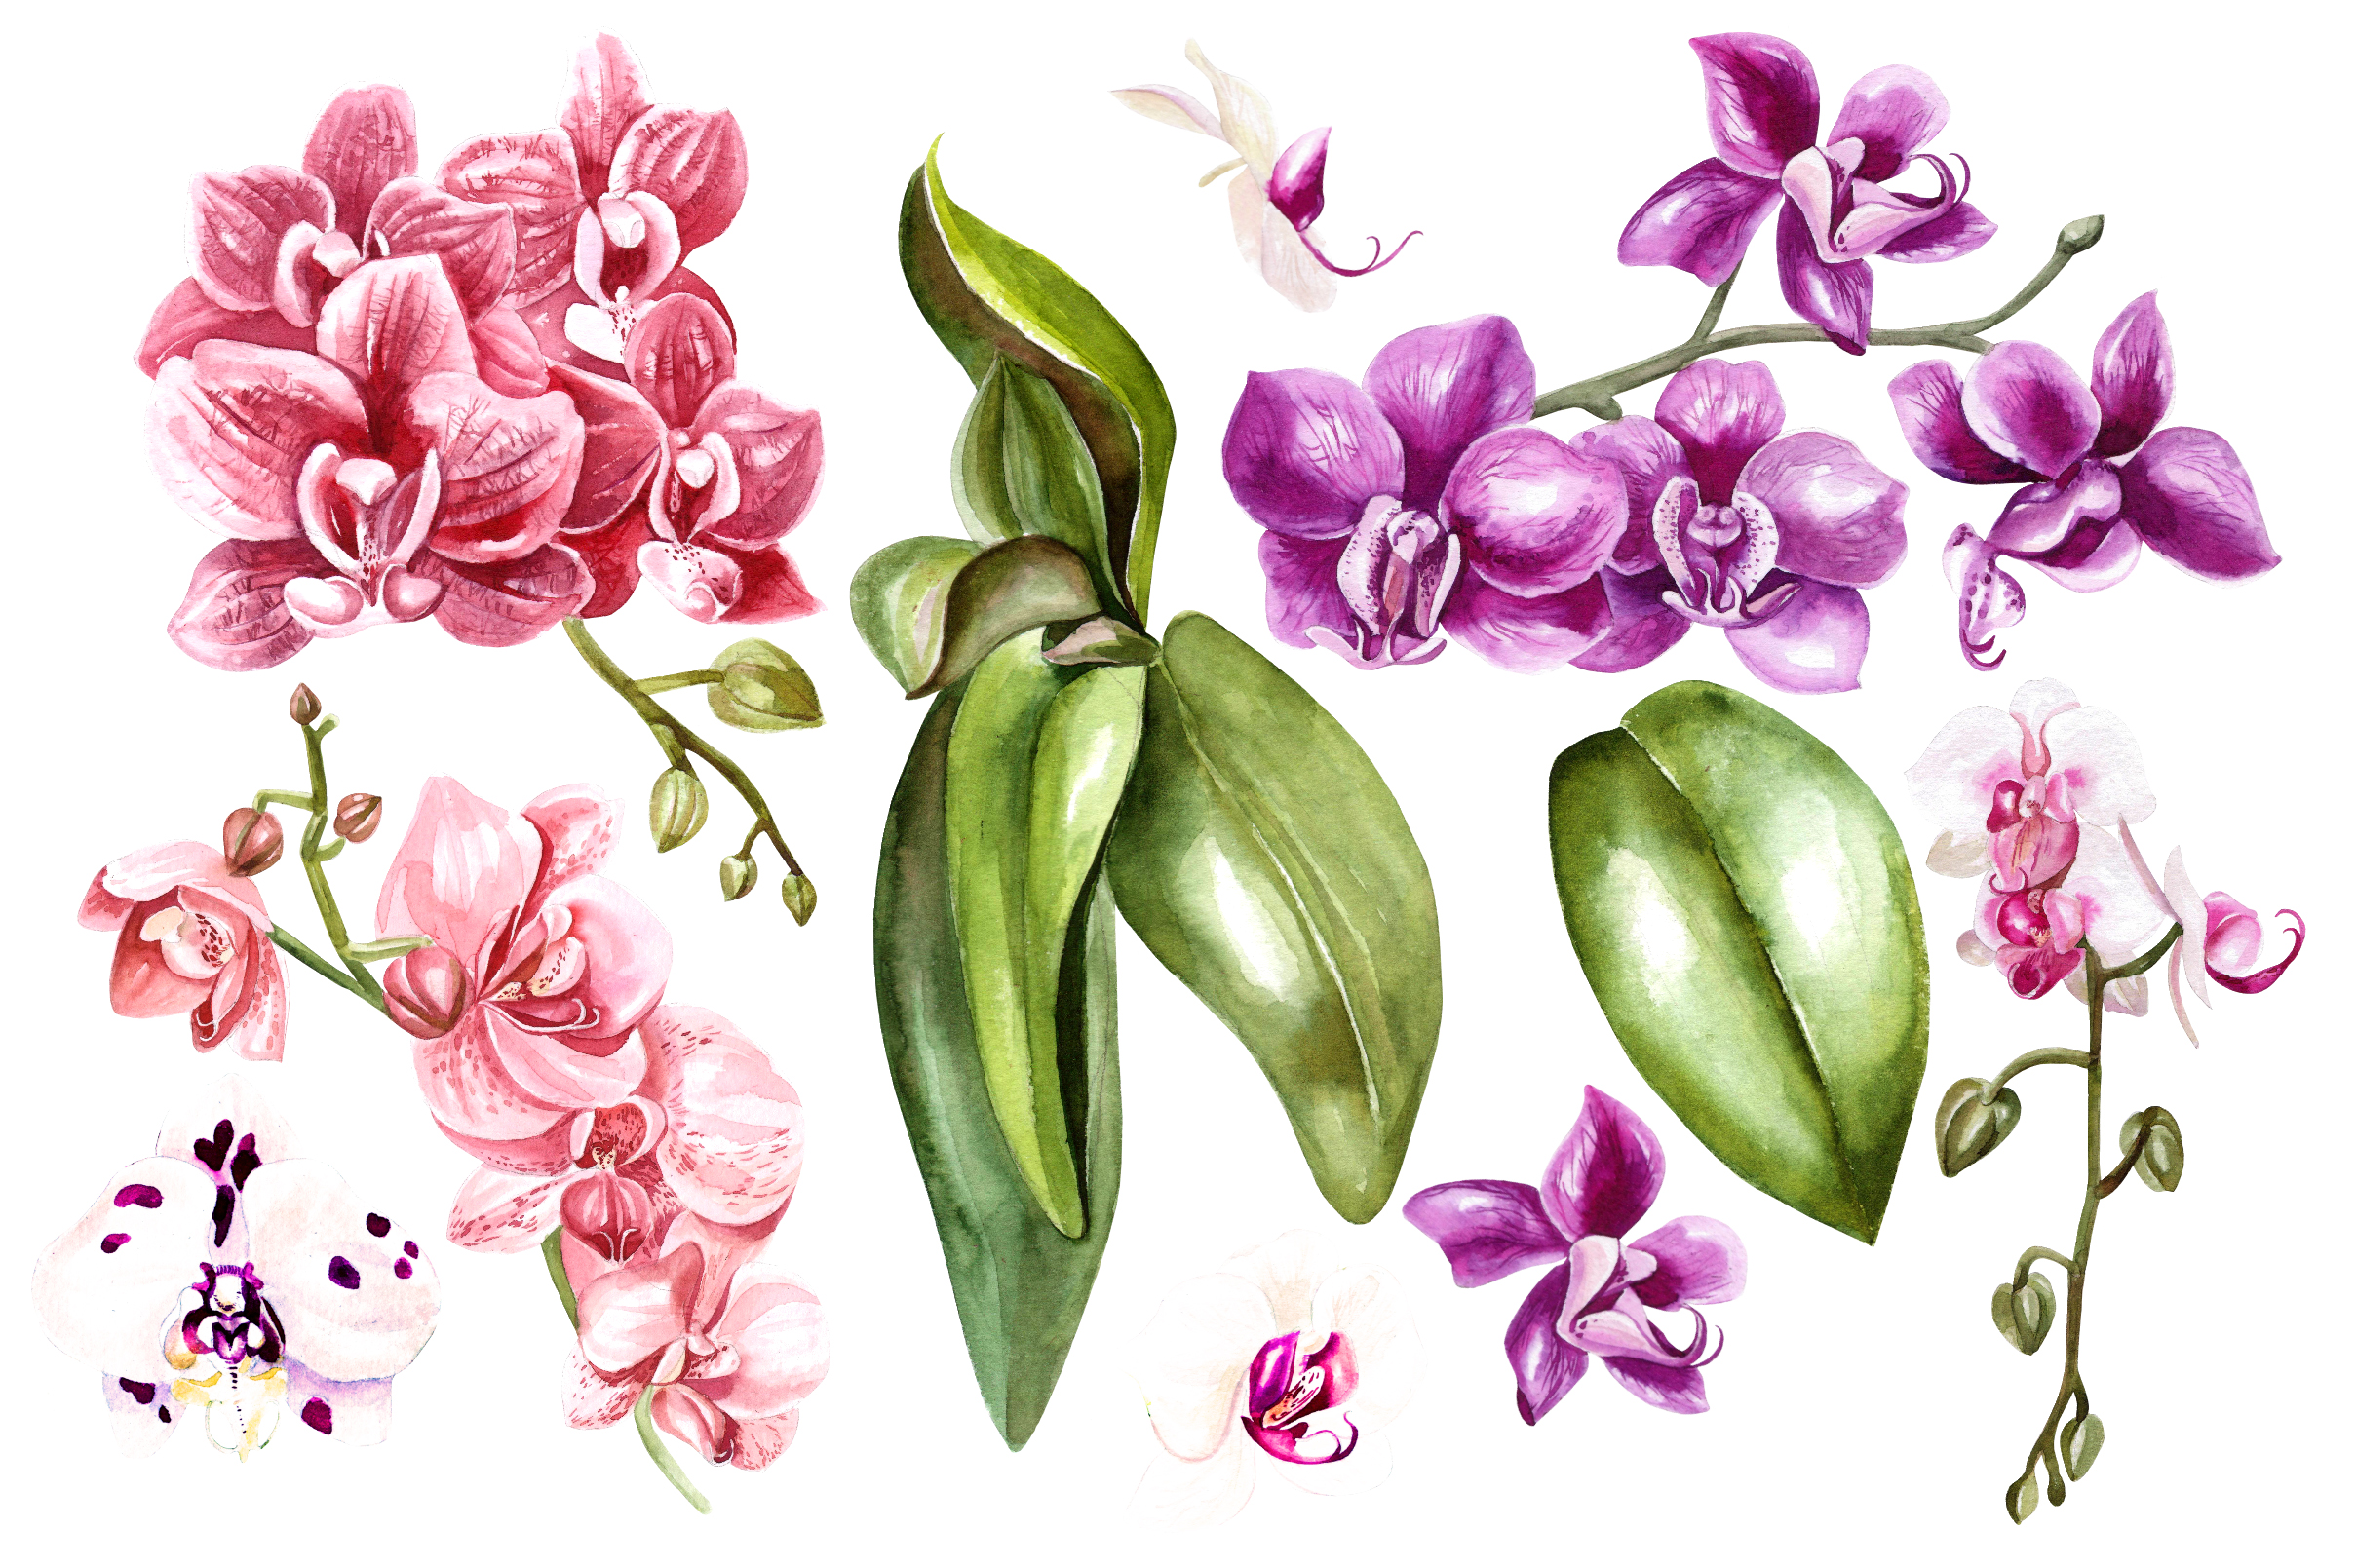 Изображения орхидеи в разных художественных стилях